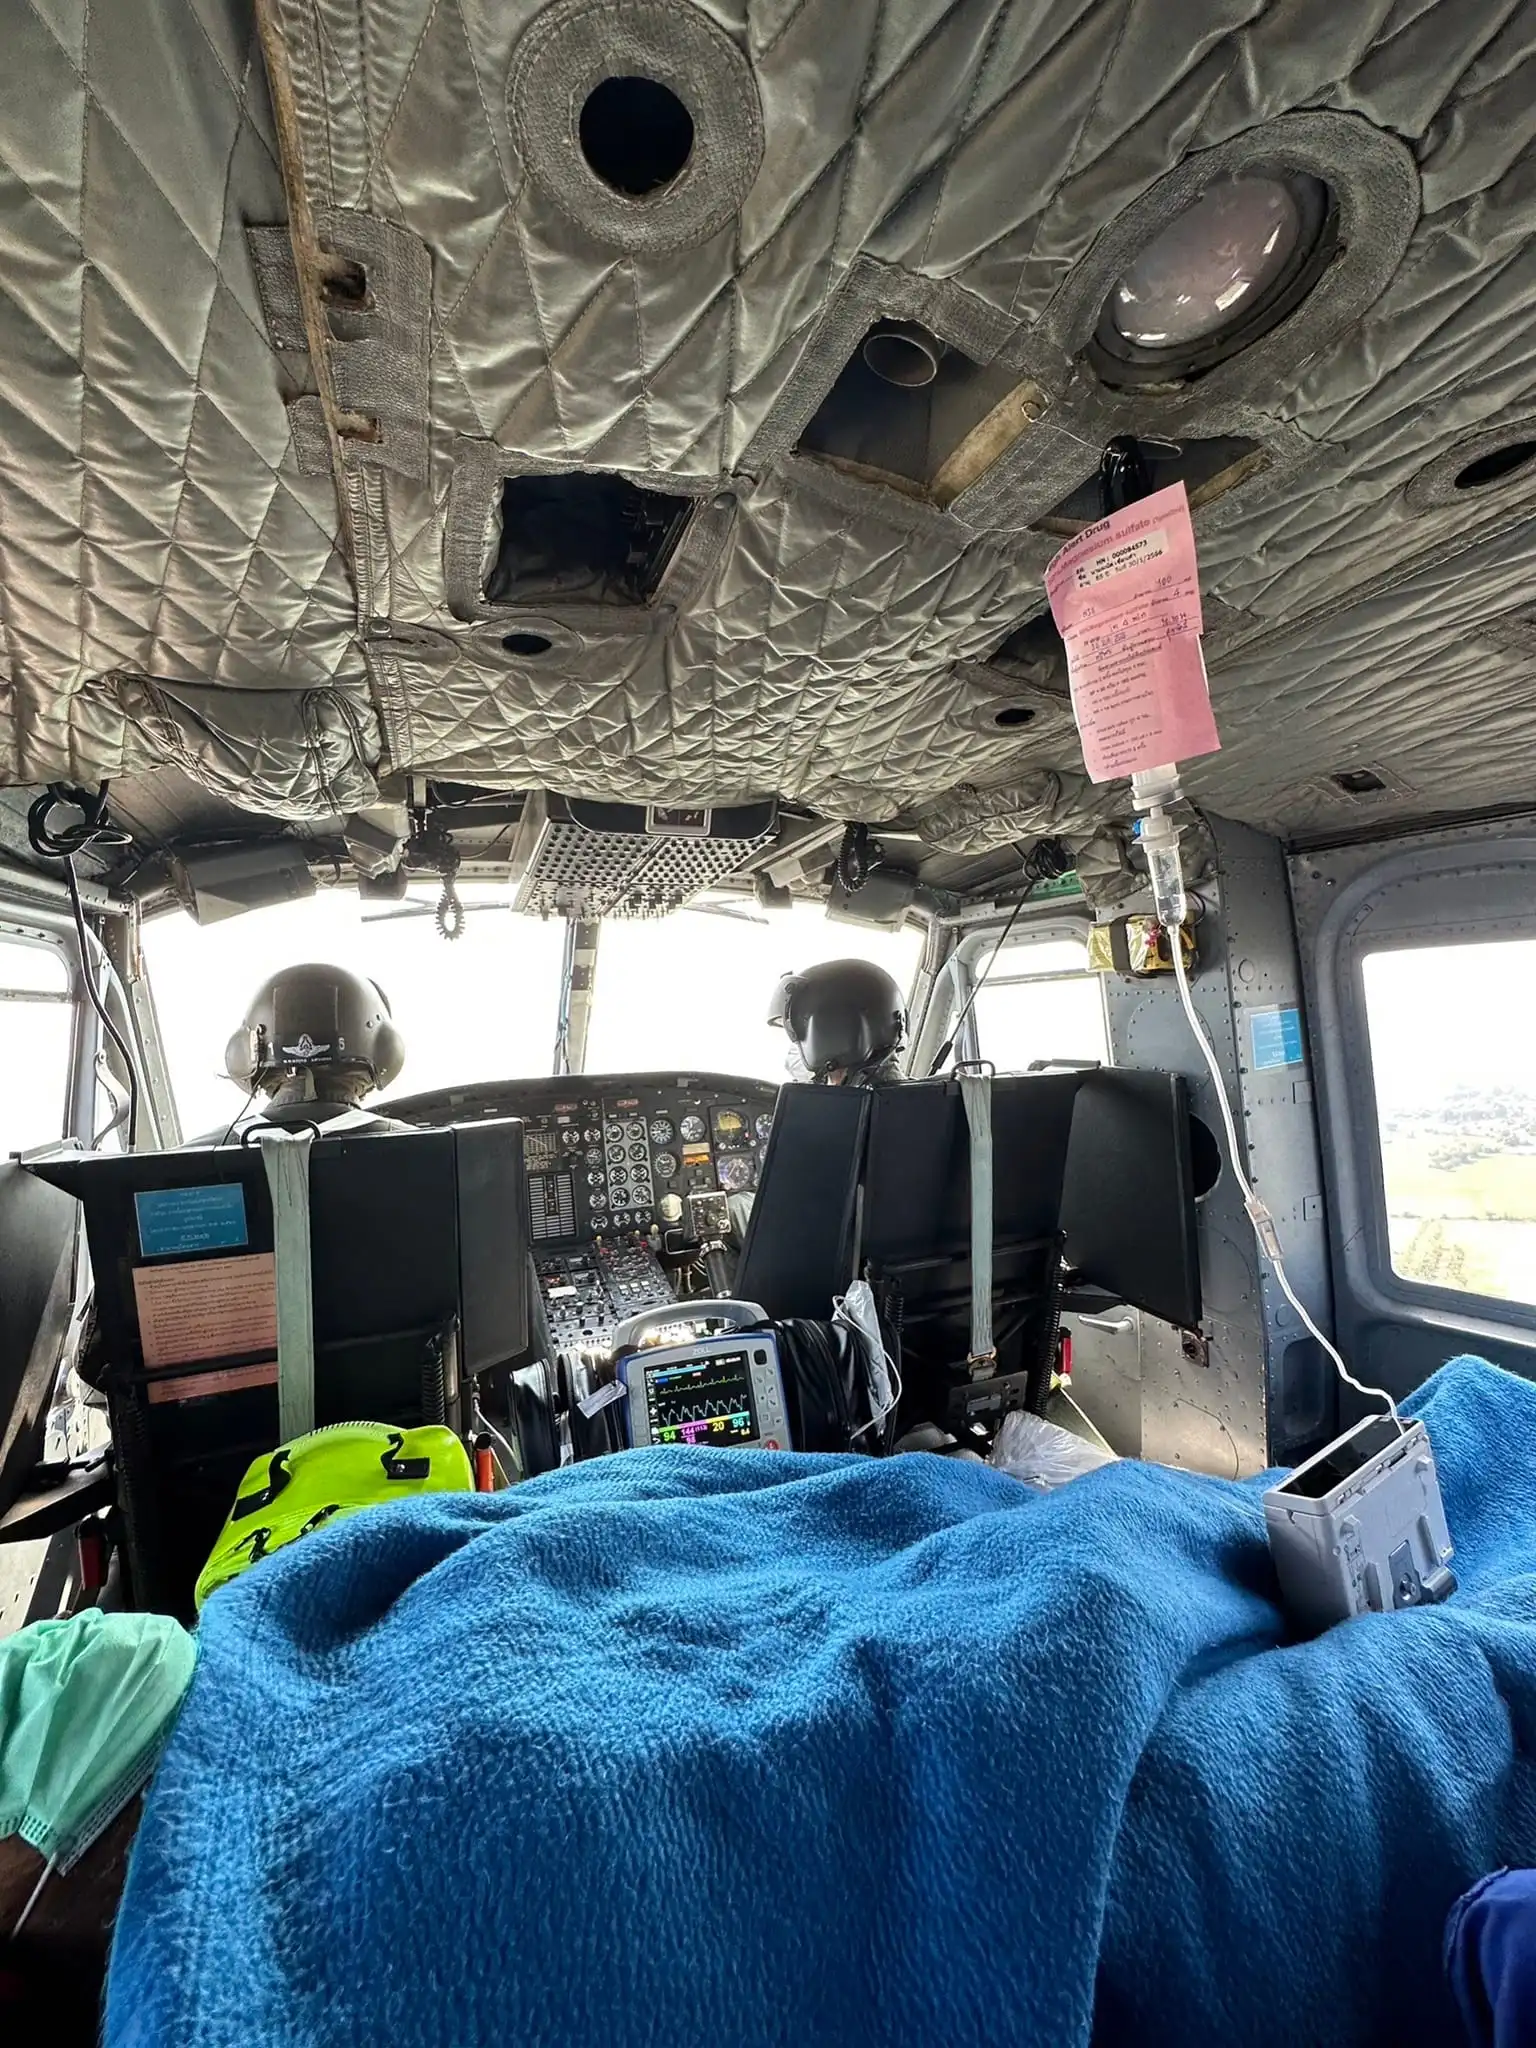 ฮ.ฉุกเฉิน Bell 212 รับผู้ป่วยชาย จาก อ.แม่อาย ส่ง รพ.นครพิงค์ HealthServ